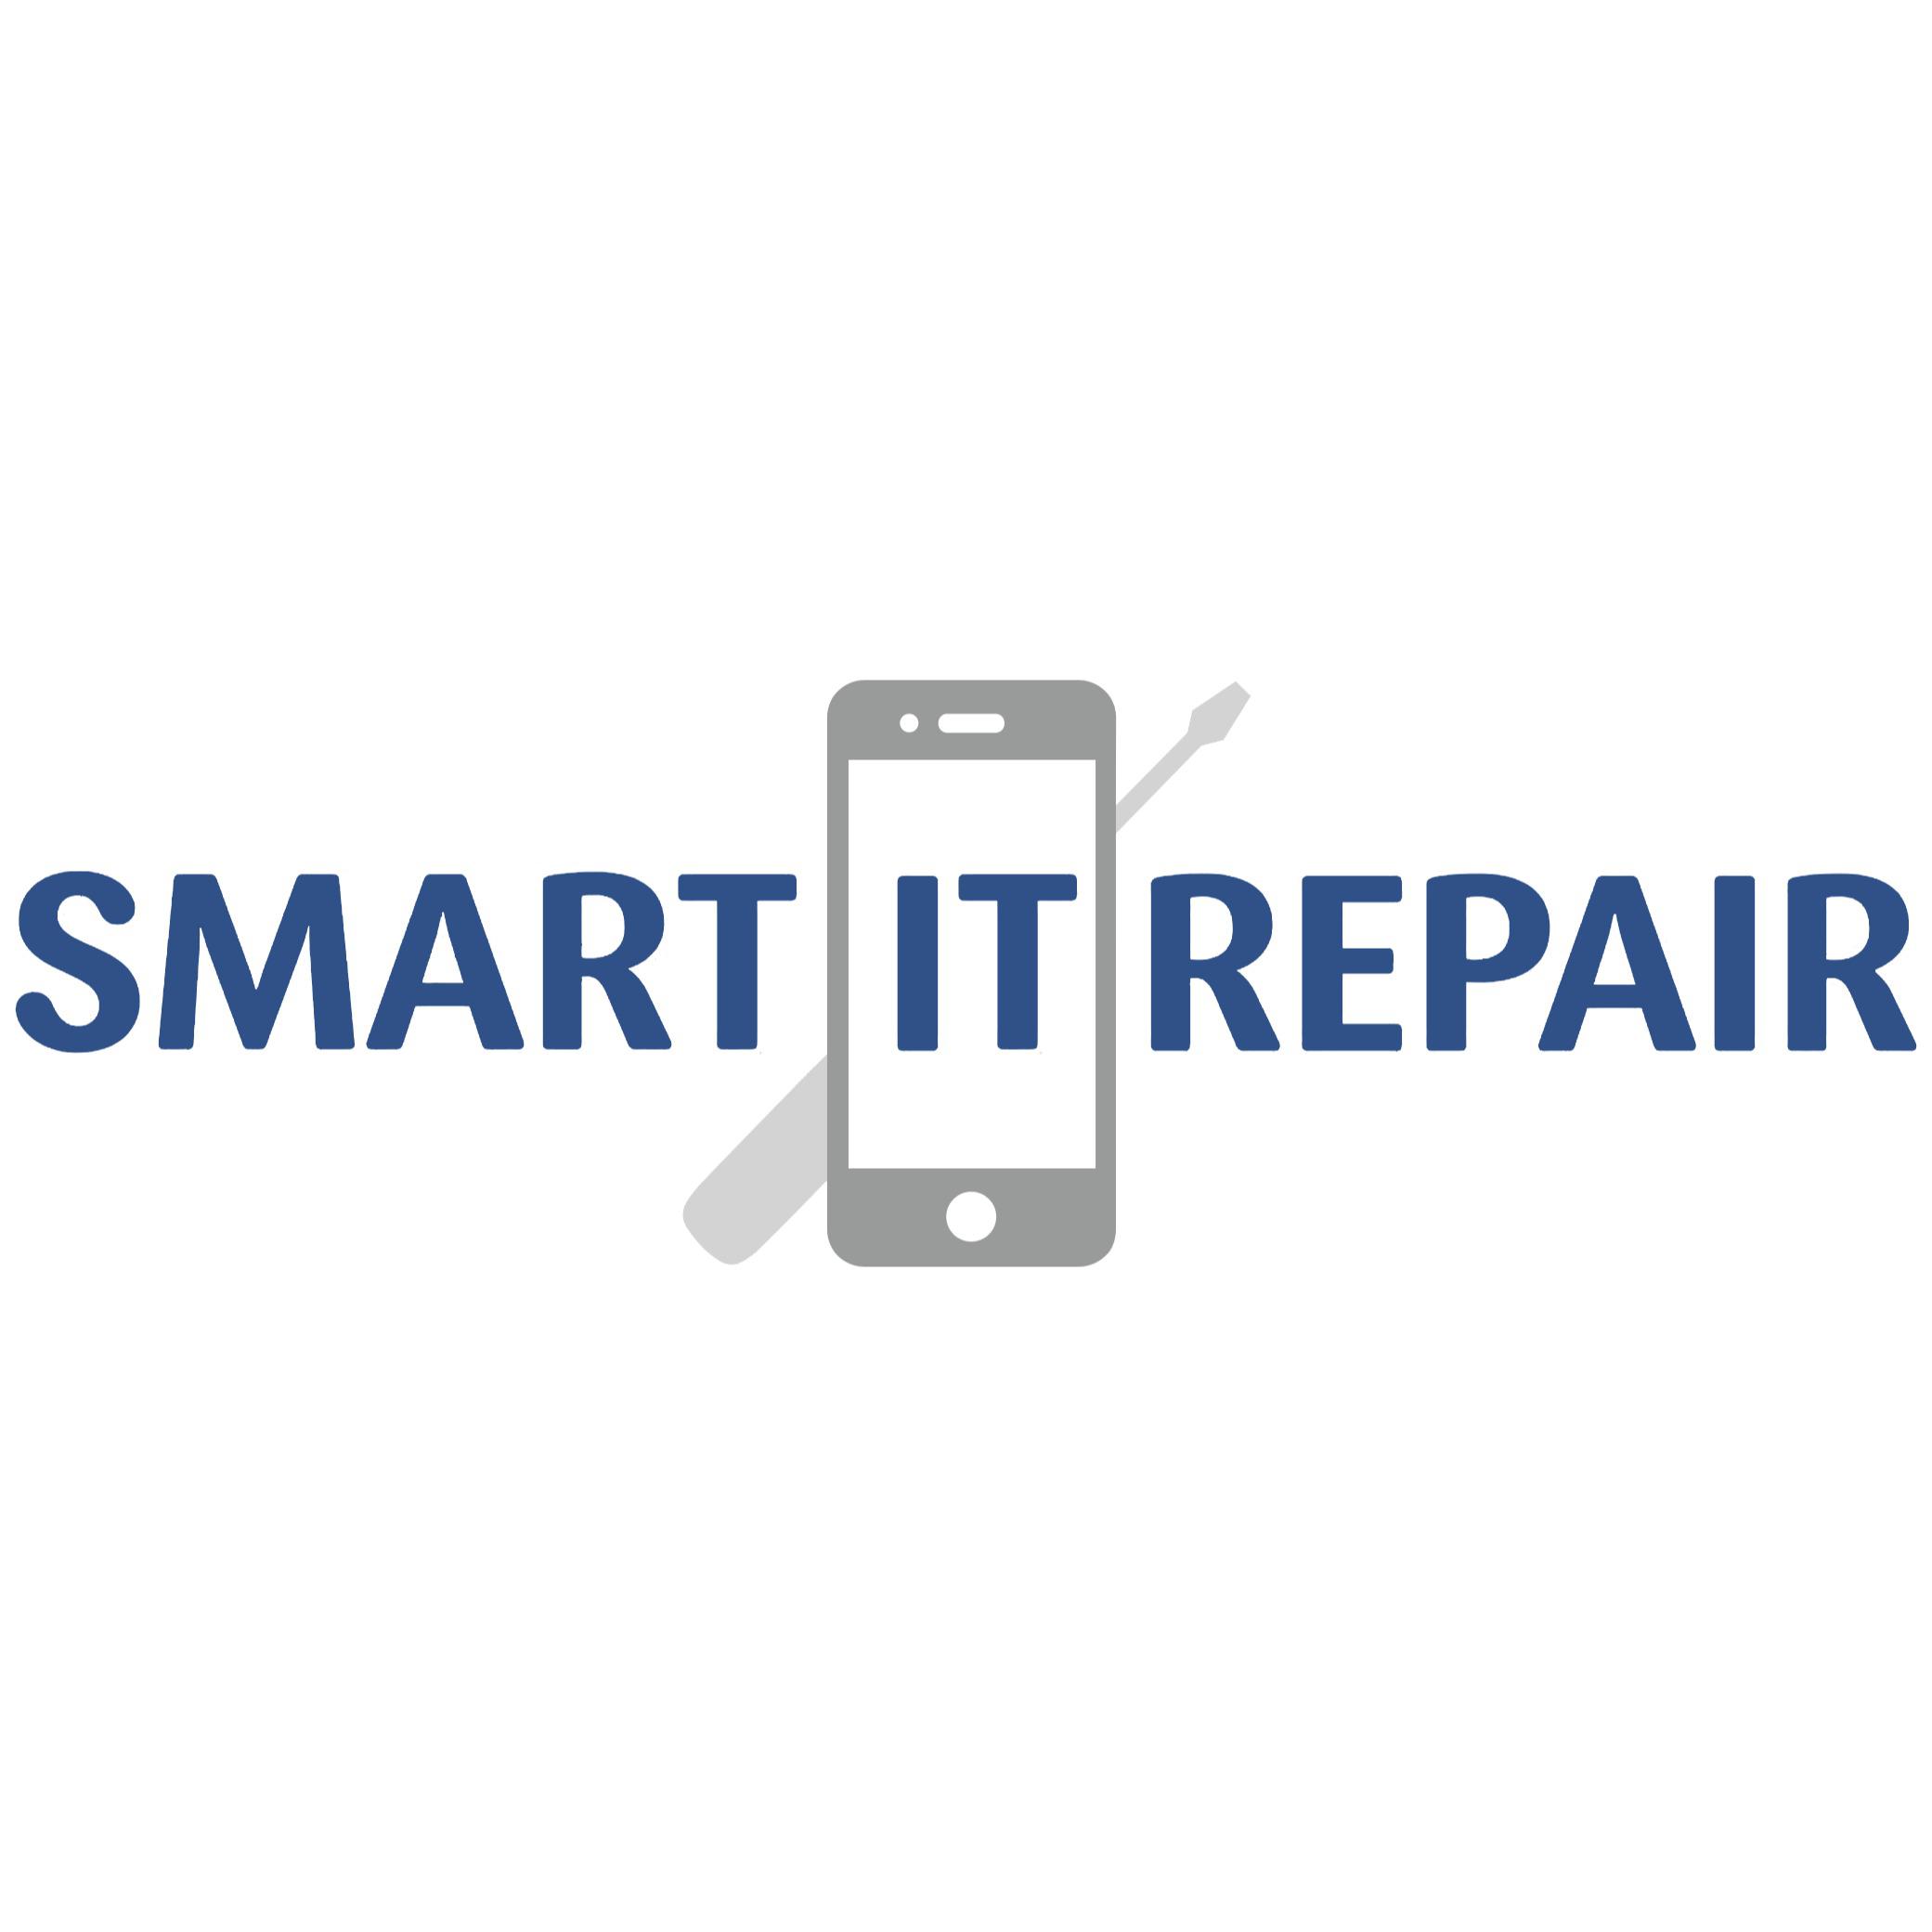 Smart IT Repair Logo